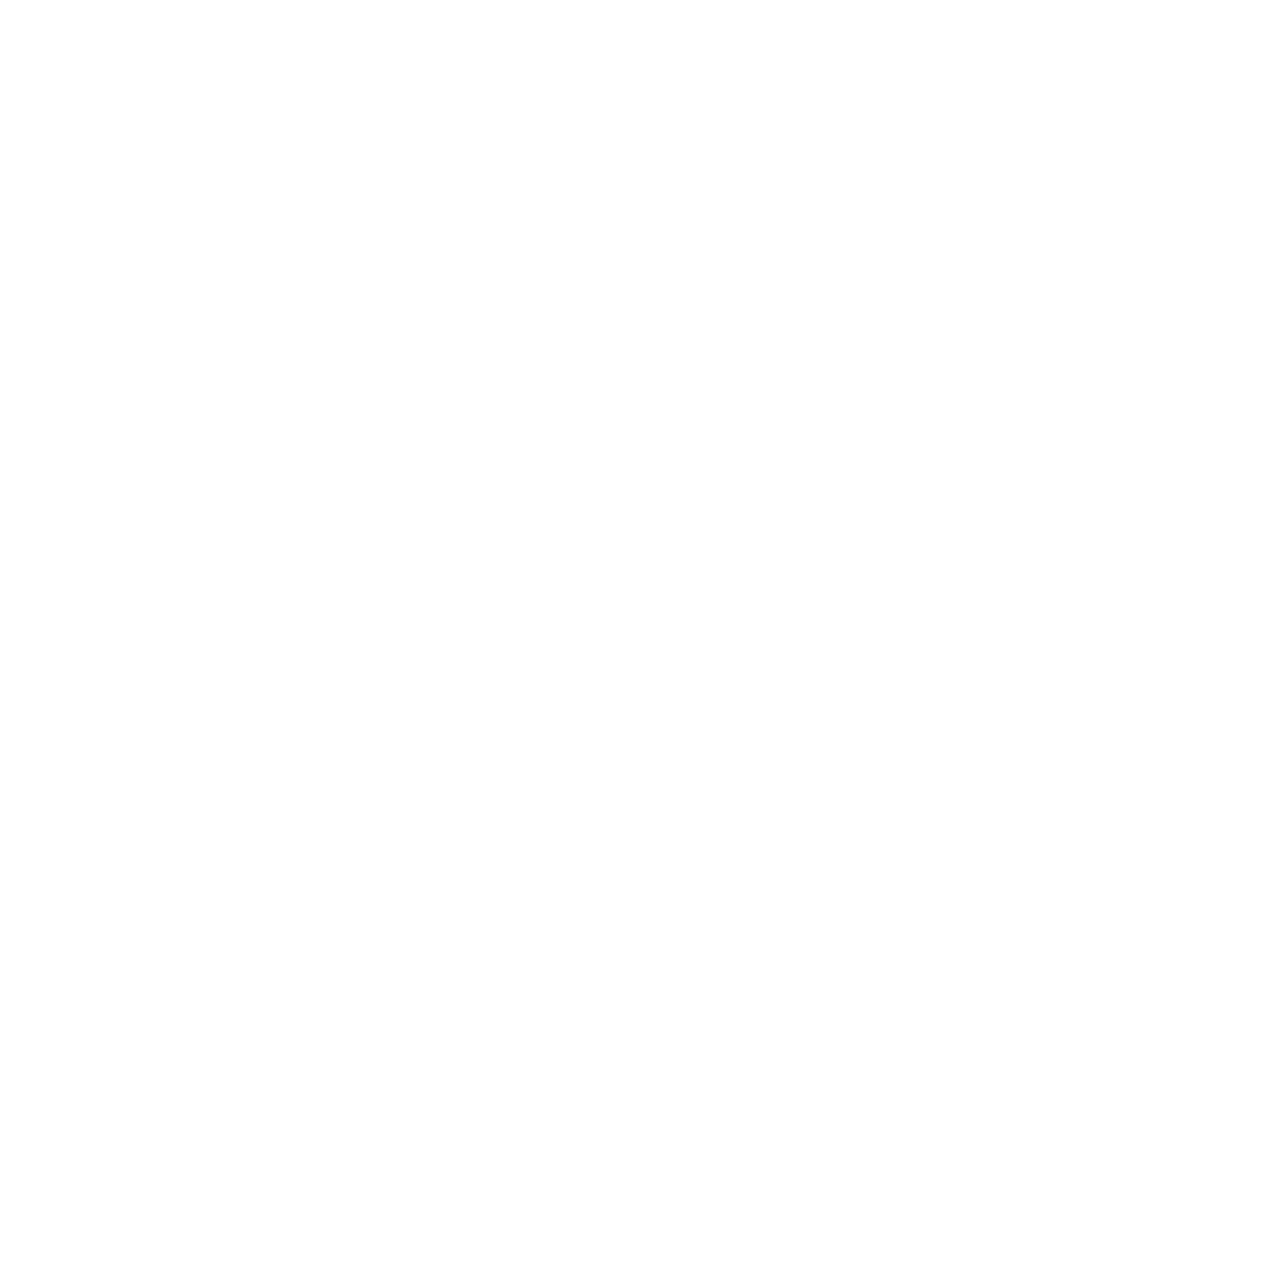 vinzieboy